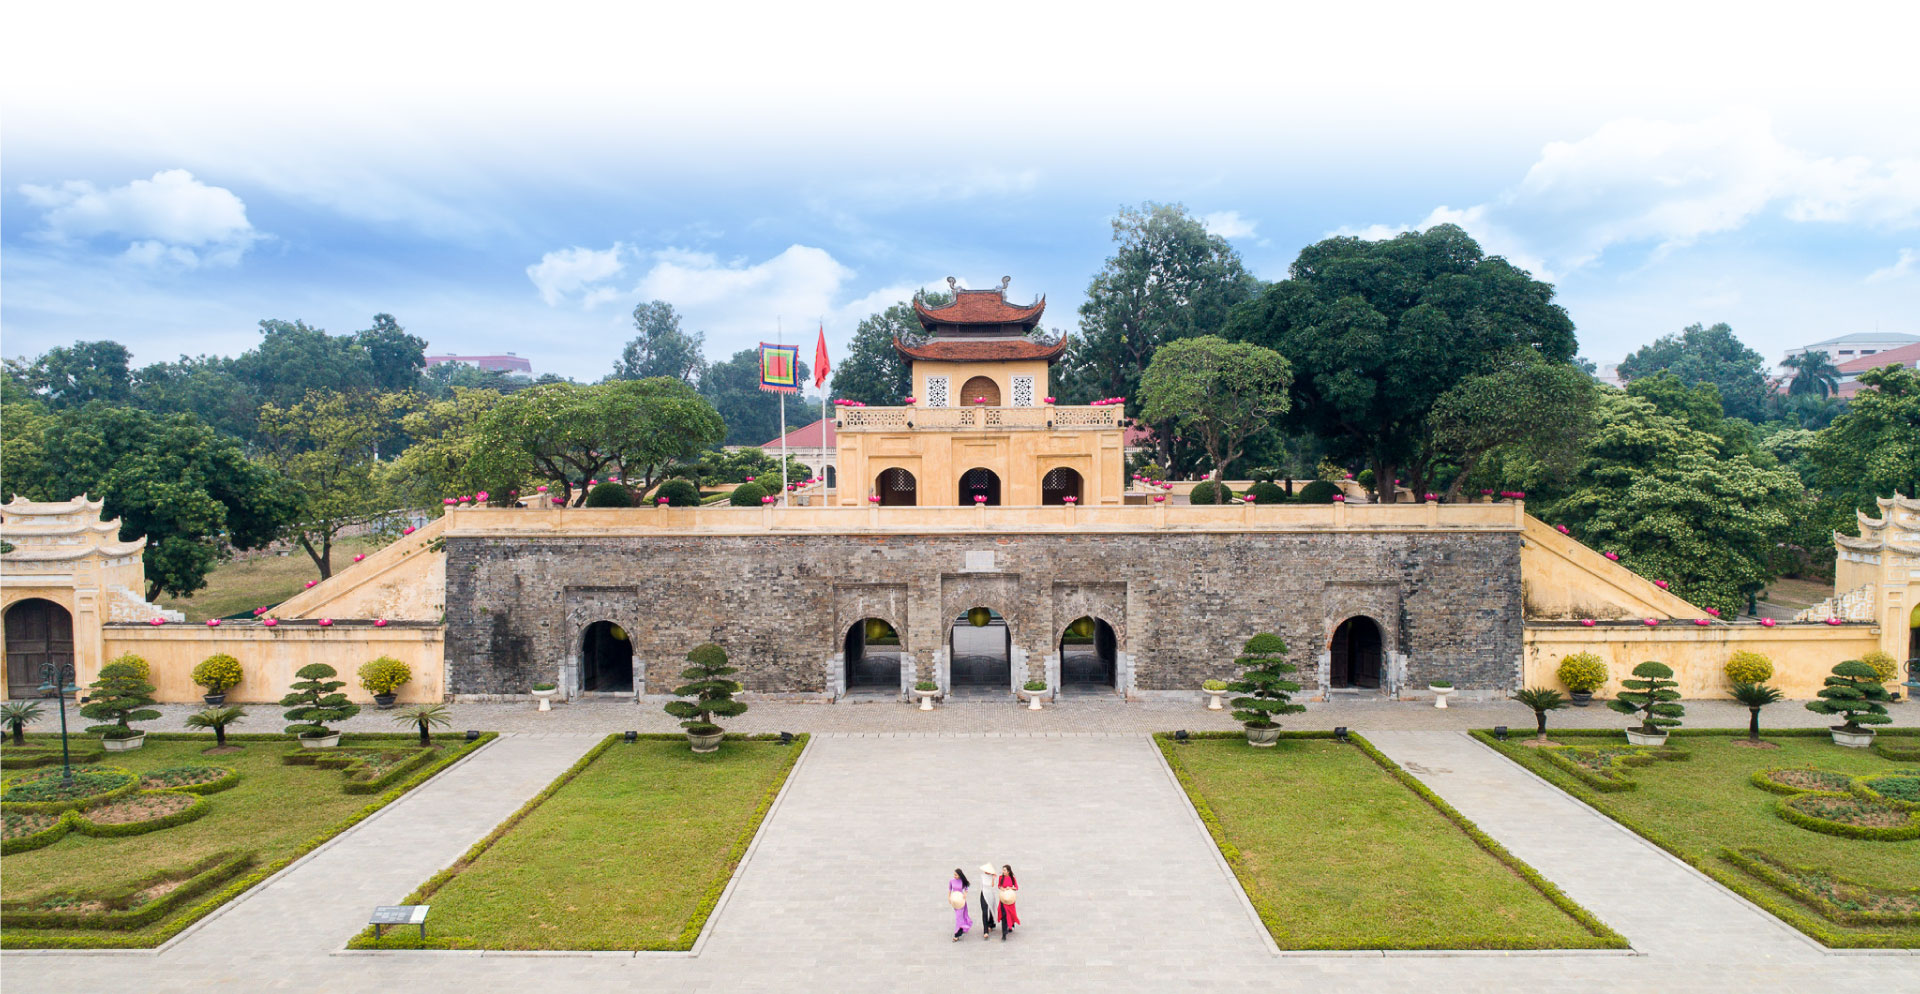 Văn hóa Thăng Long-Hà Nội ngàn năm hội tụ - Bài 1: Phát triển Thủ đô bằng giá trị lịch sử và nguồn lực văn hóa